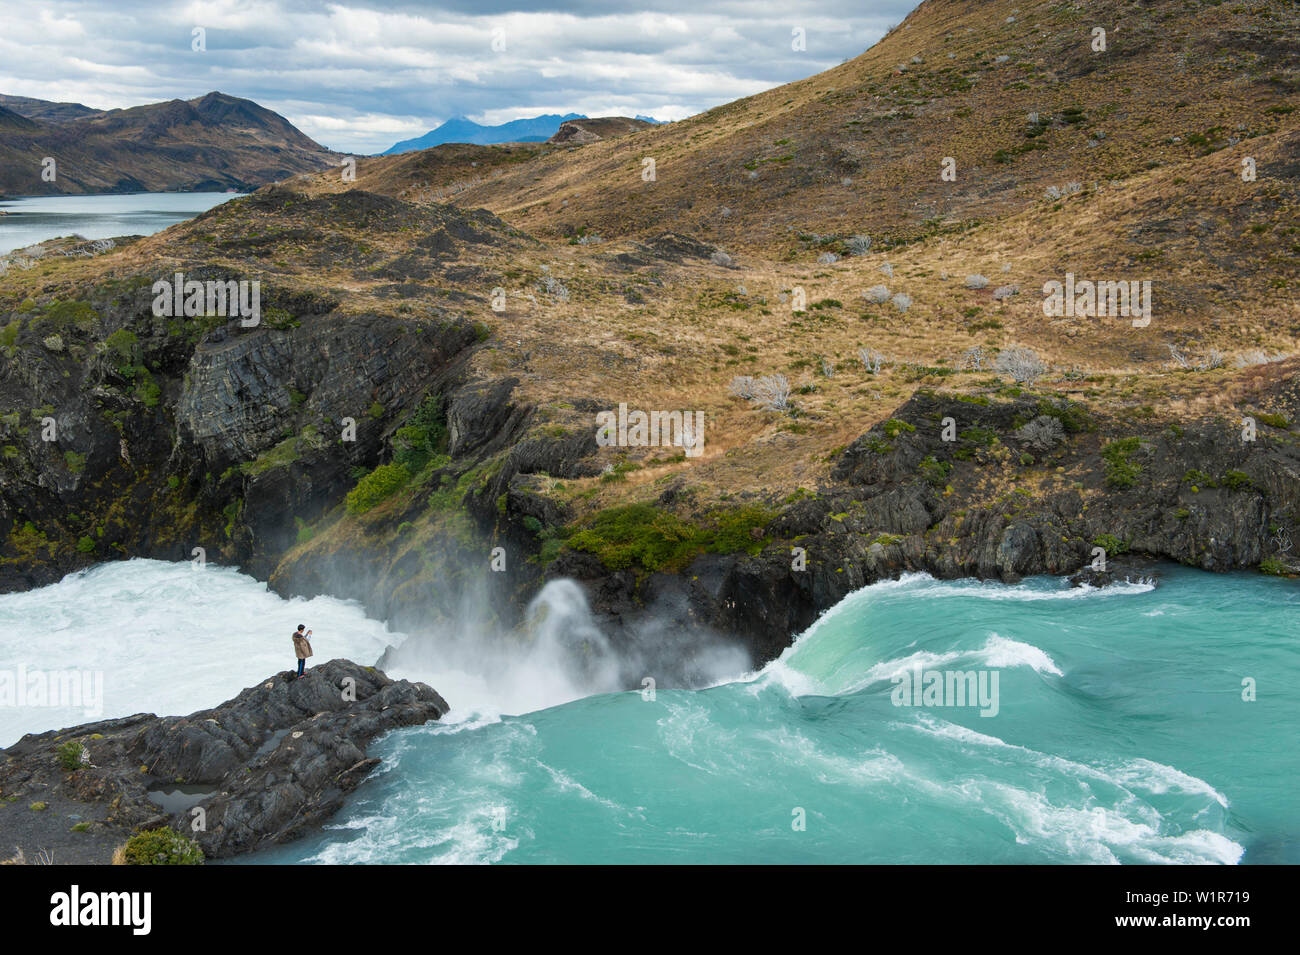 Un visitatore acquisisce una foto al Mirador Salto Grande Cascata, il Parco Nazionale di Torres del Paine Magallanes y de la Antartica Chilena, Patagonia, Chi Foto Stock